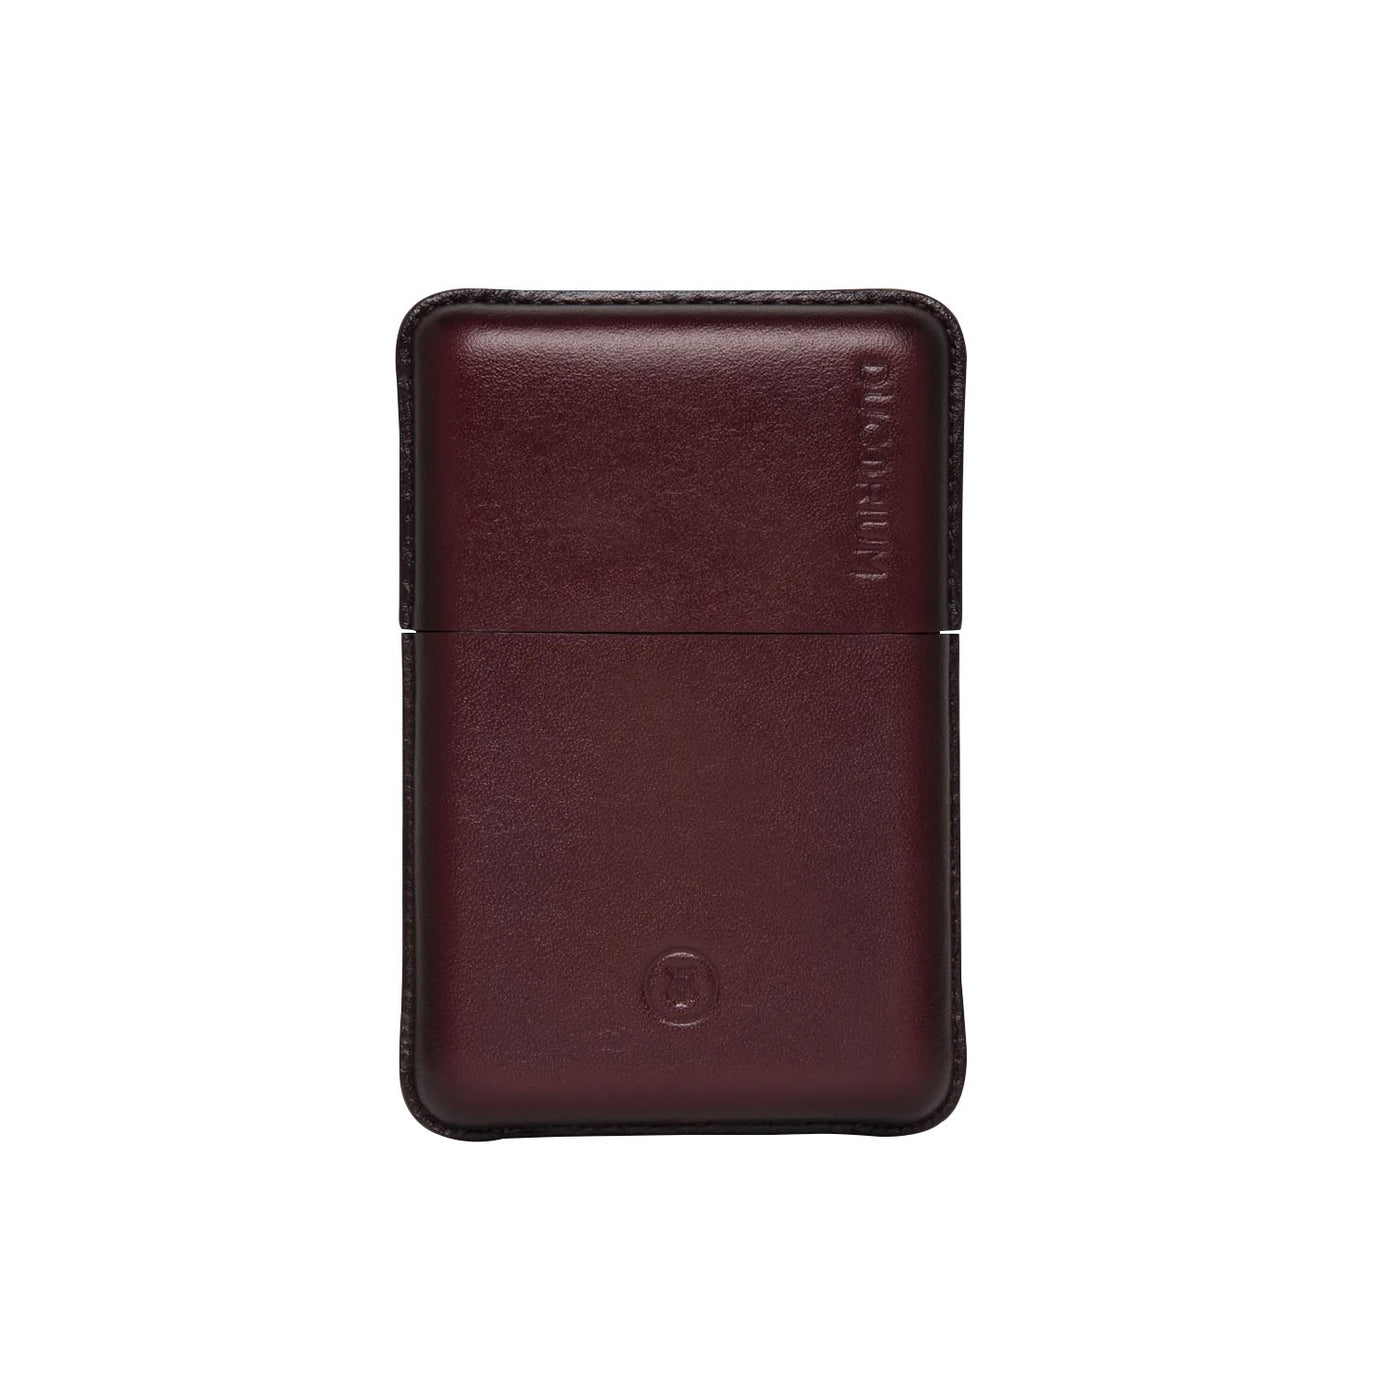 Lapis Bard Ducorium Moulded Card Case - Bordeaux 1